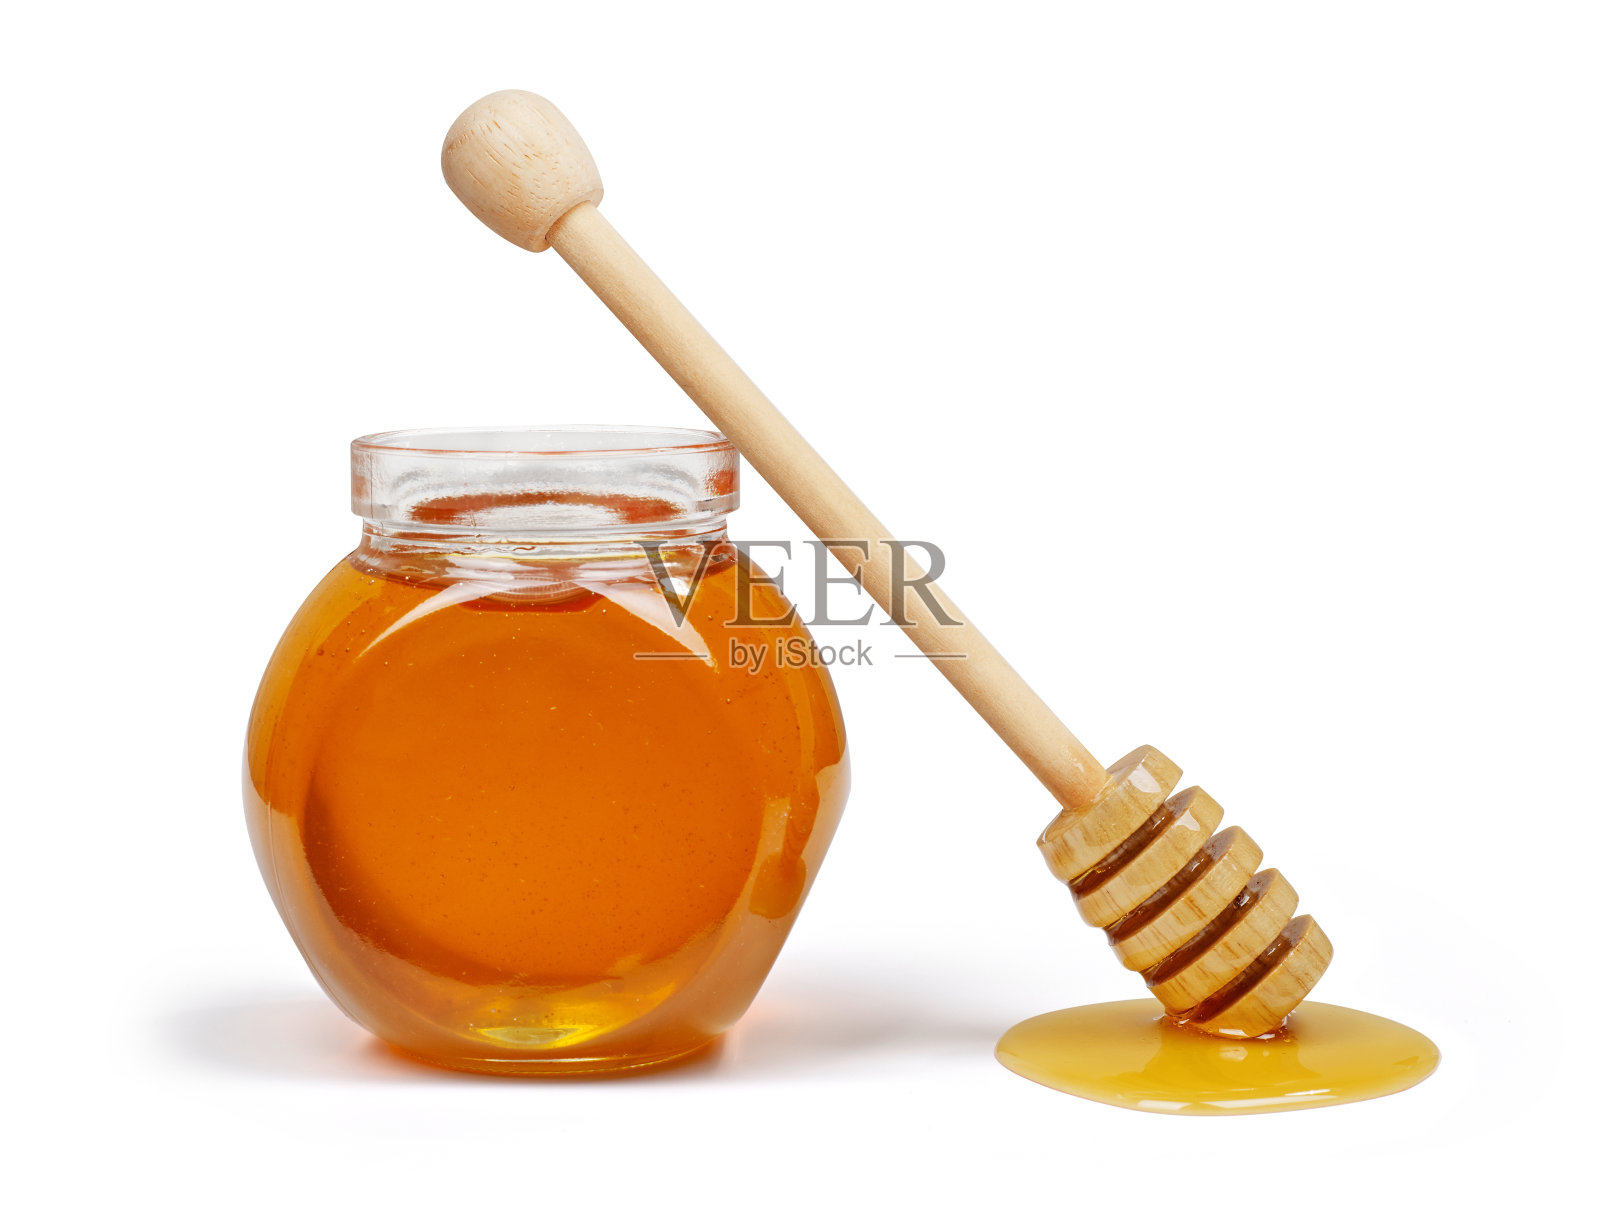 蜂蜜罐和蜂蜜勺照片摄影图片